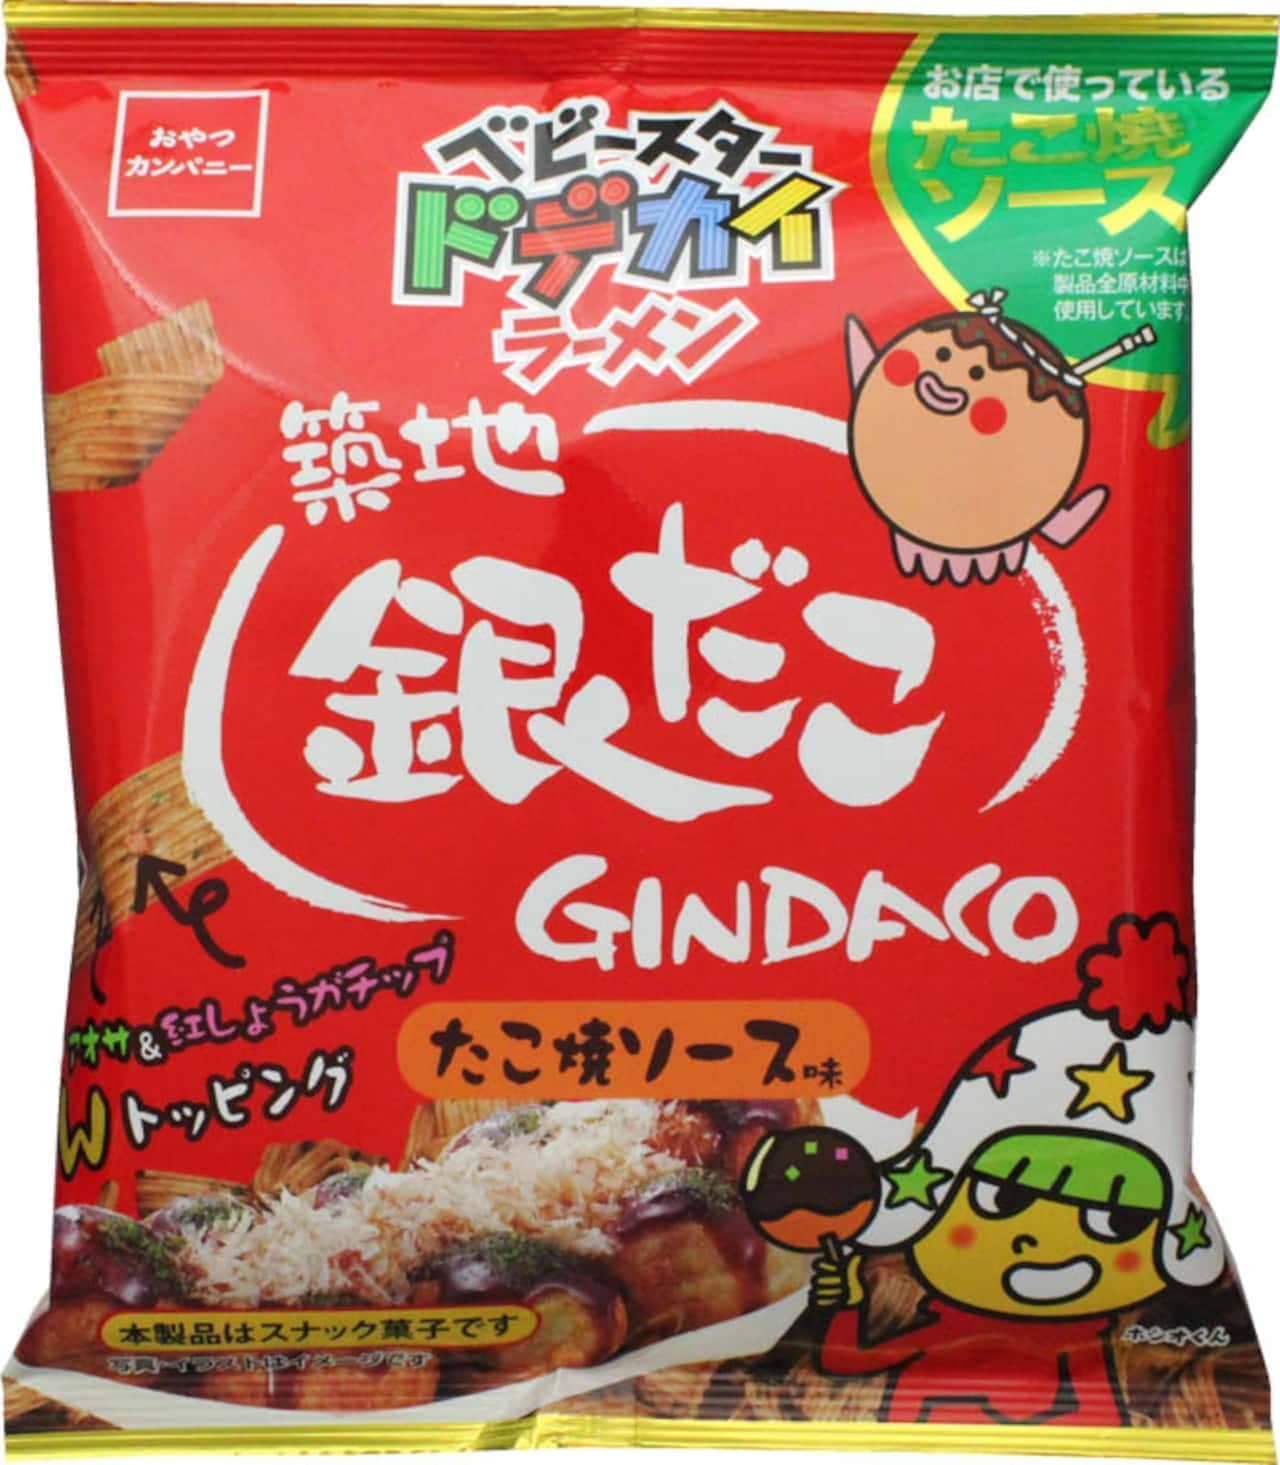 Oyazuka Company "Baby Star Dodekai Ramen (Tsukiji Gindako Takoyaki Sauce Flavor)